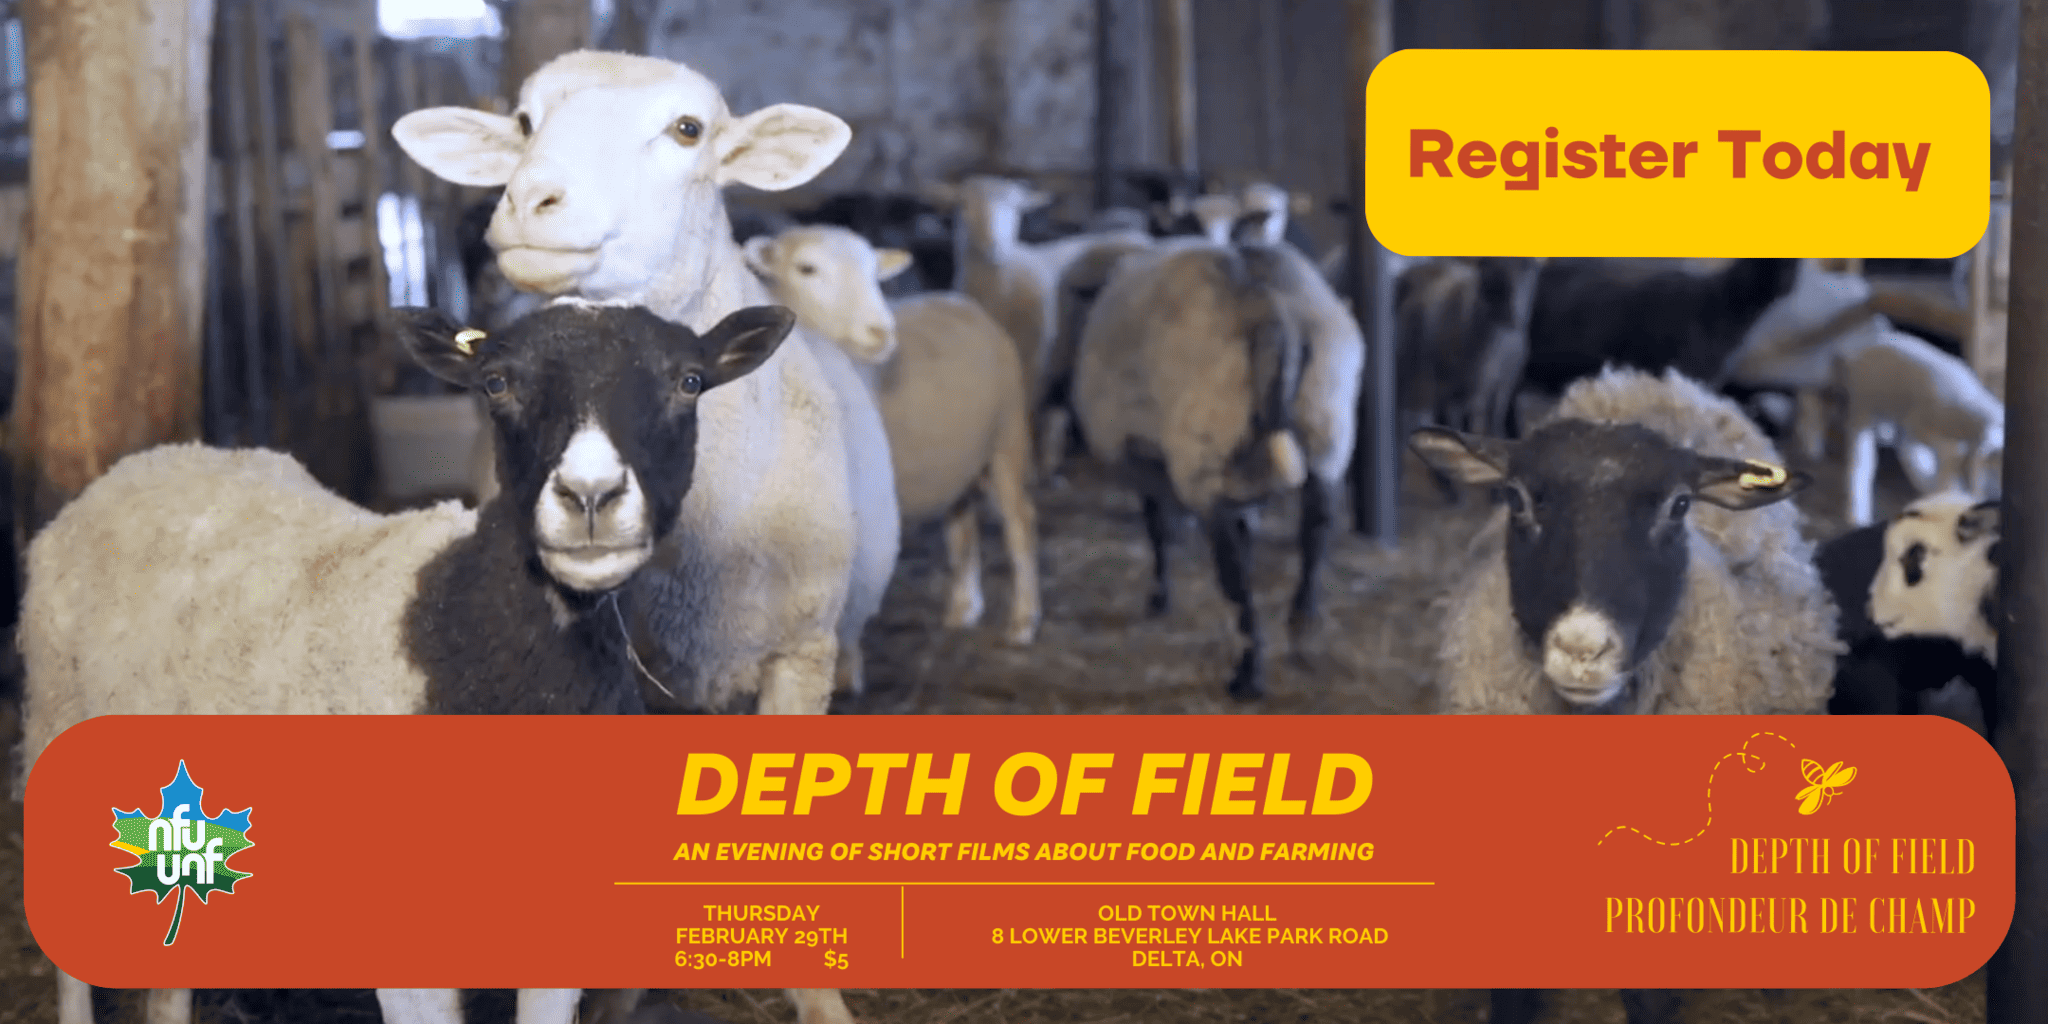 Rejoignez-nous le jeudi 29 février à l'ancien hôtel de ville de Delta, en Ontario, de 6 h 30 à 8 h, pour une projection communautaire de Depth of Field: Films About Farming avec le Syndicat national des fermiers de l'Ontario, section locale 318.